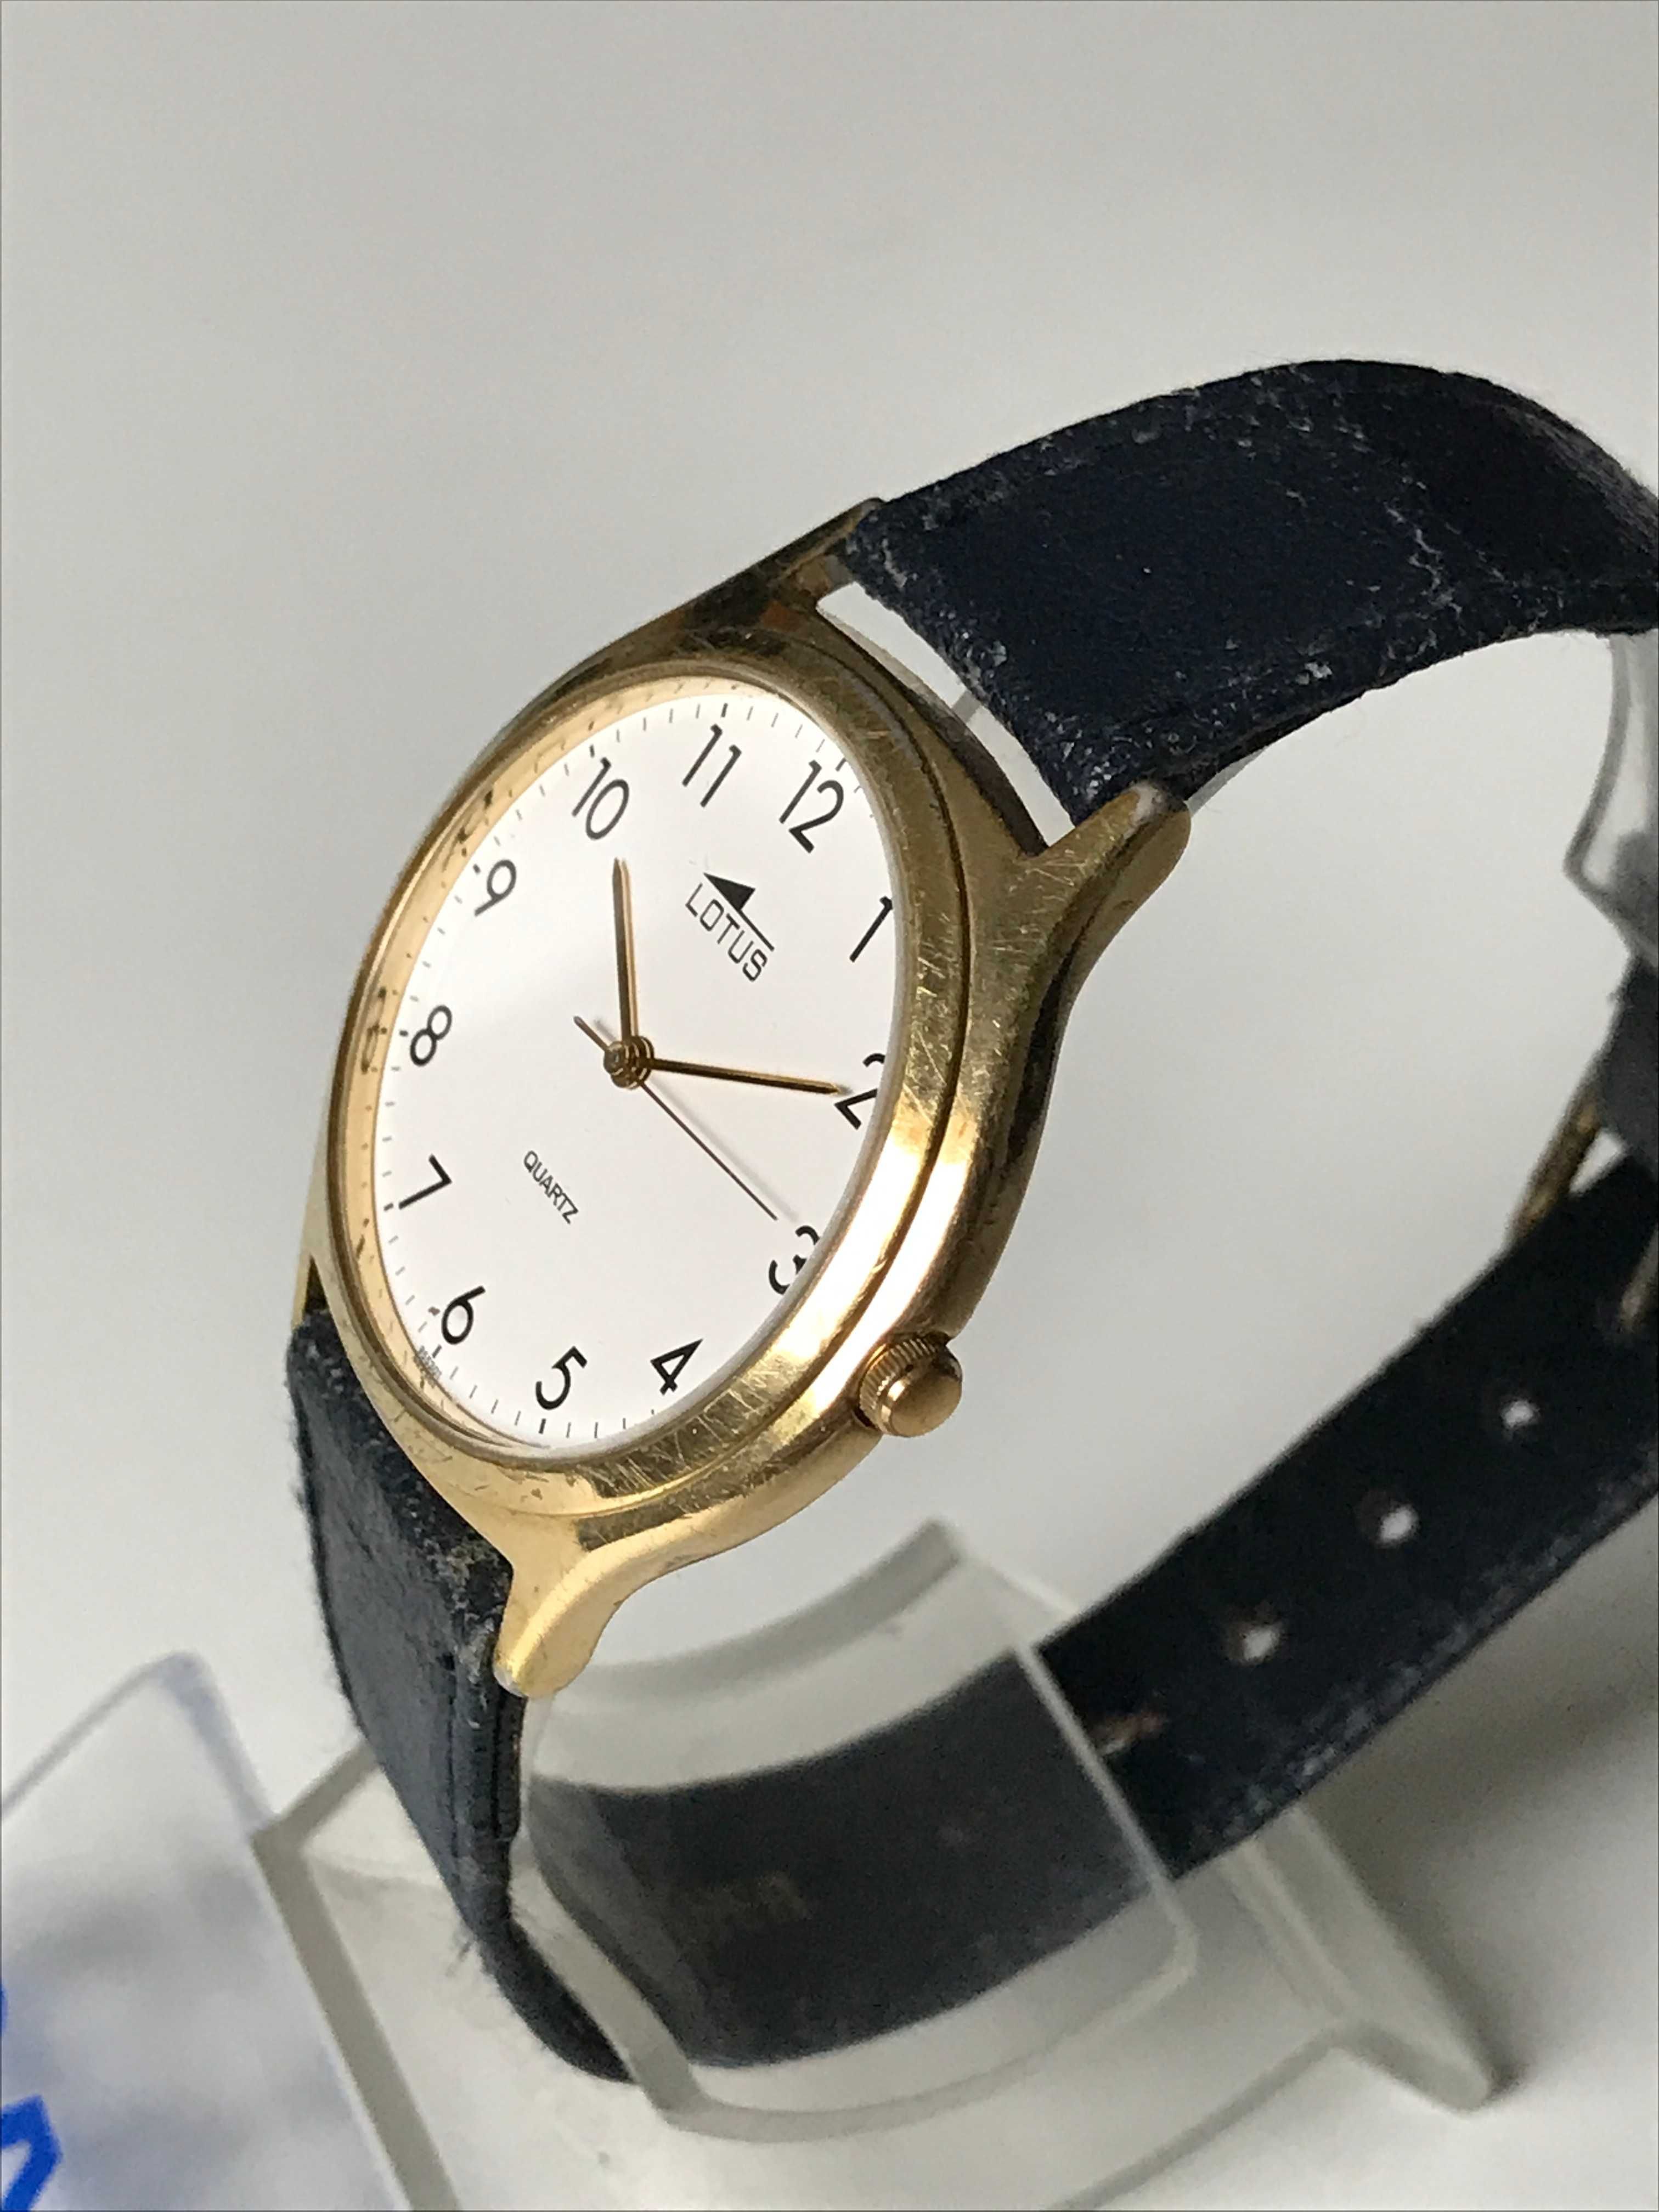 Relógio Lotus Dourado Quartz Vintage Bracelete Pele